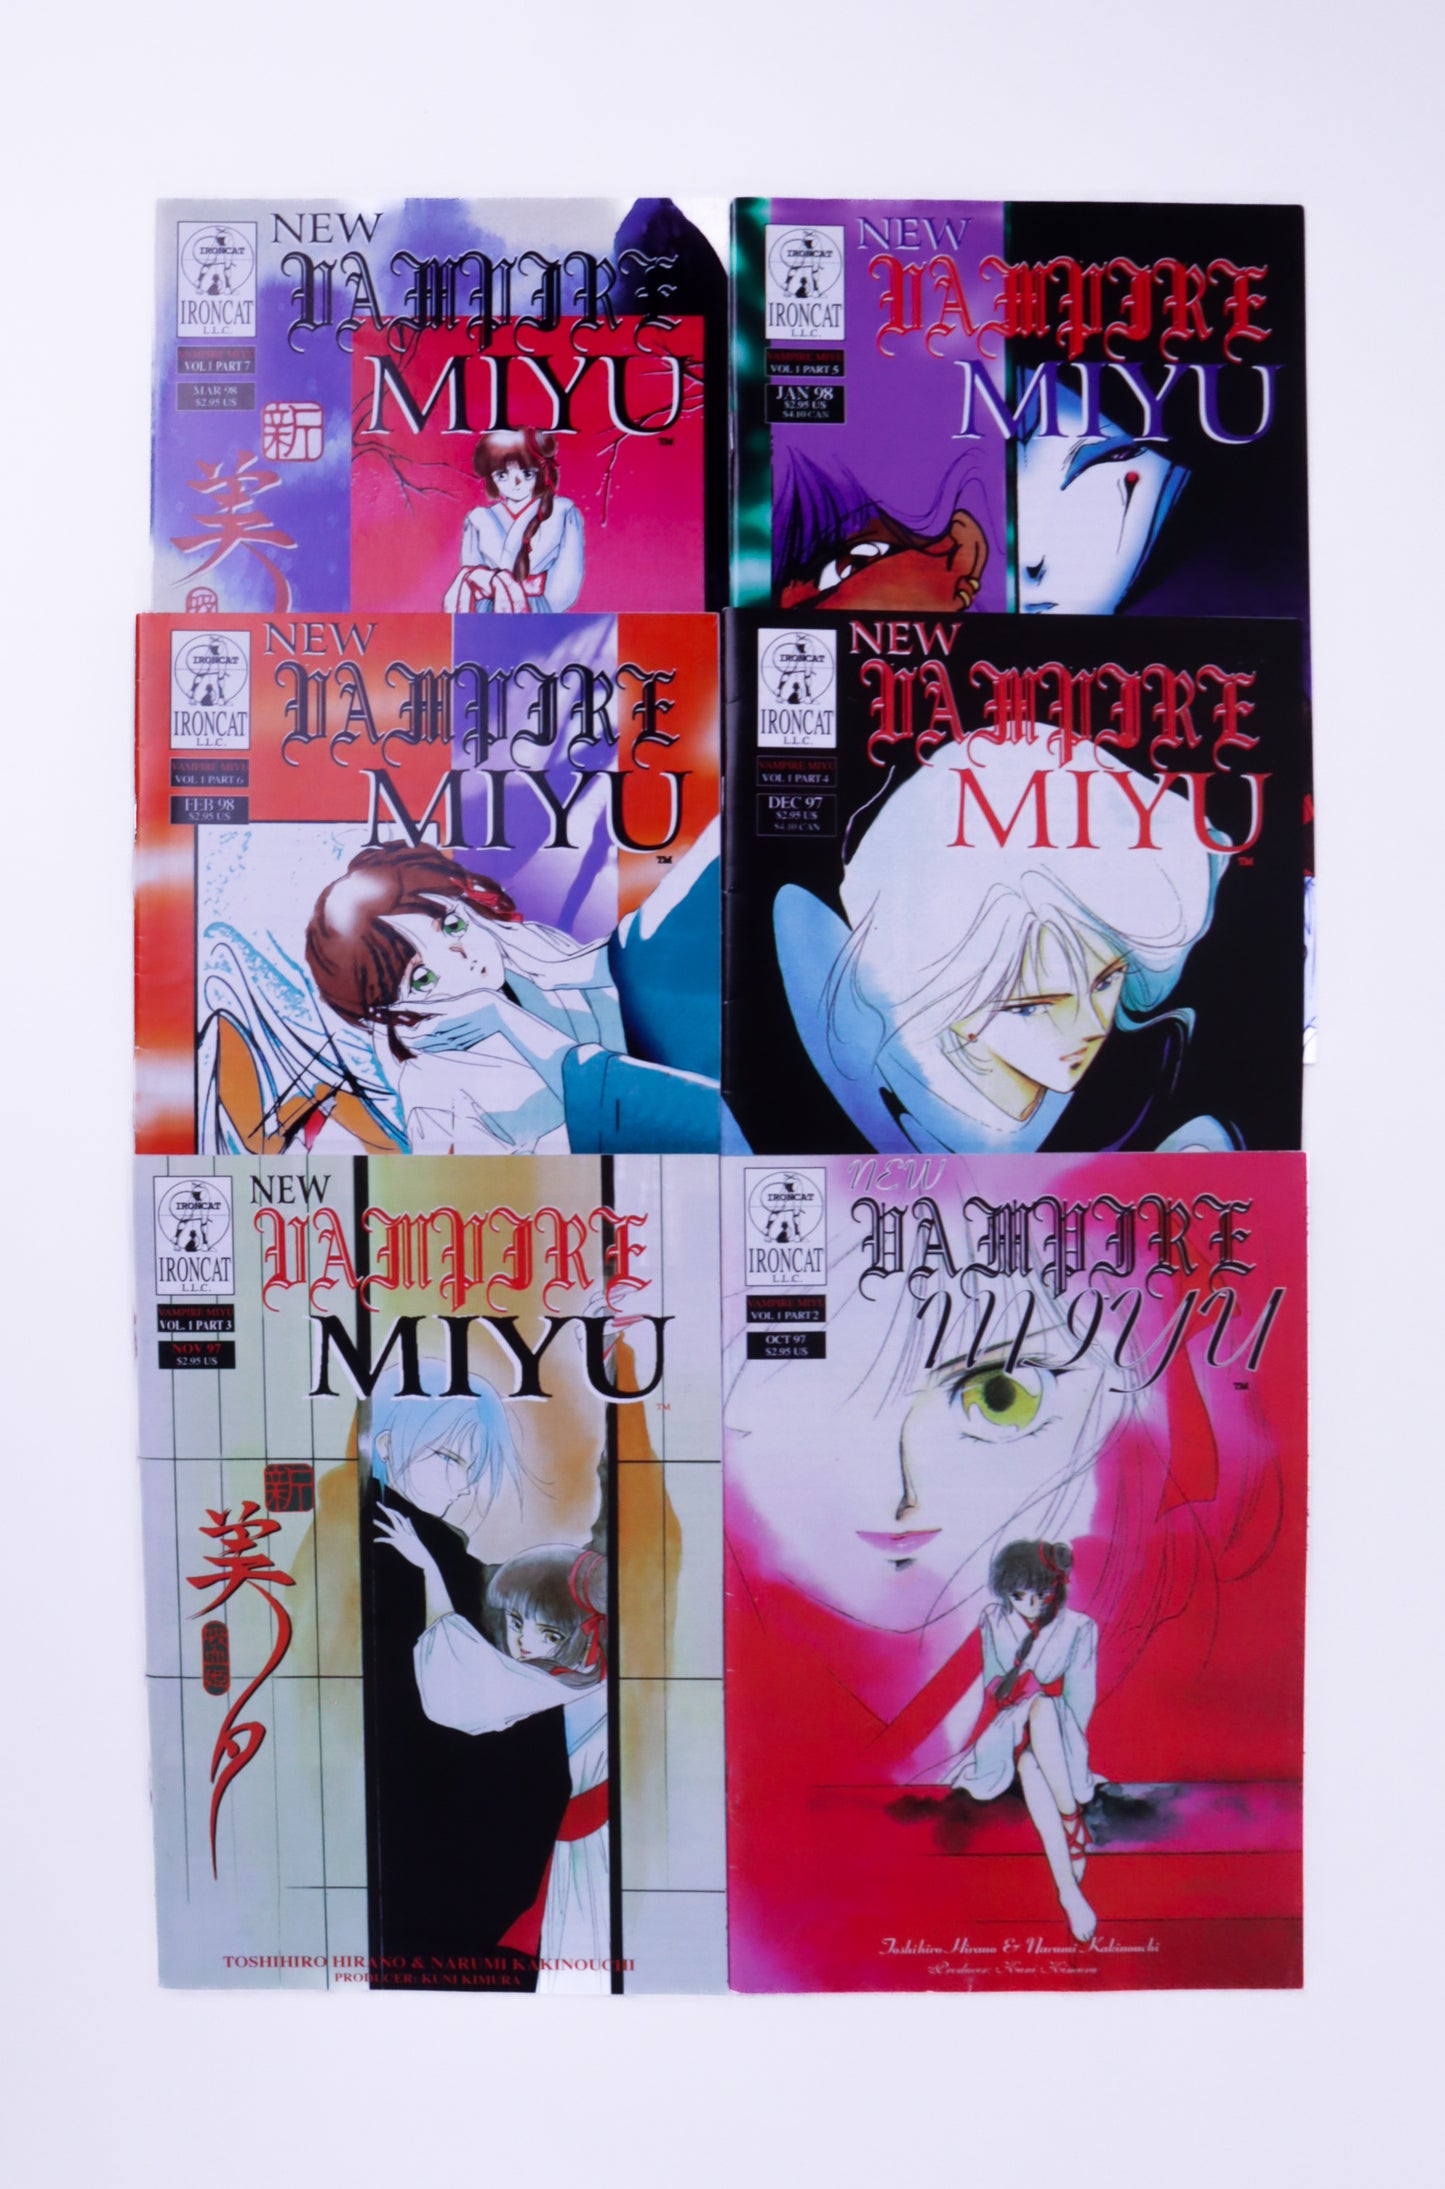 New Vampire Miyu Vol. 1 Part 1-7